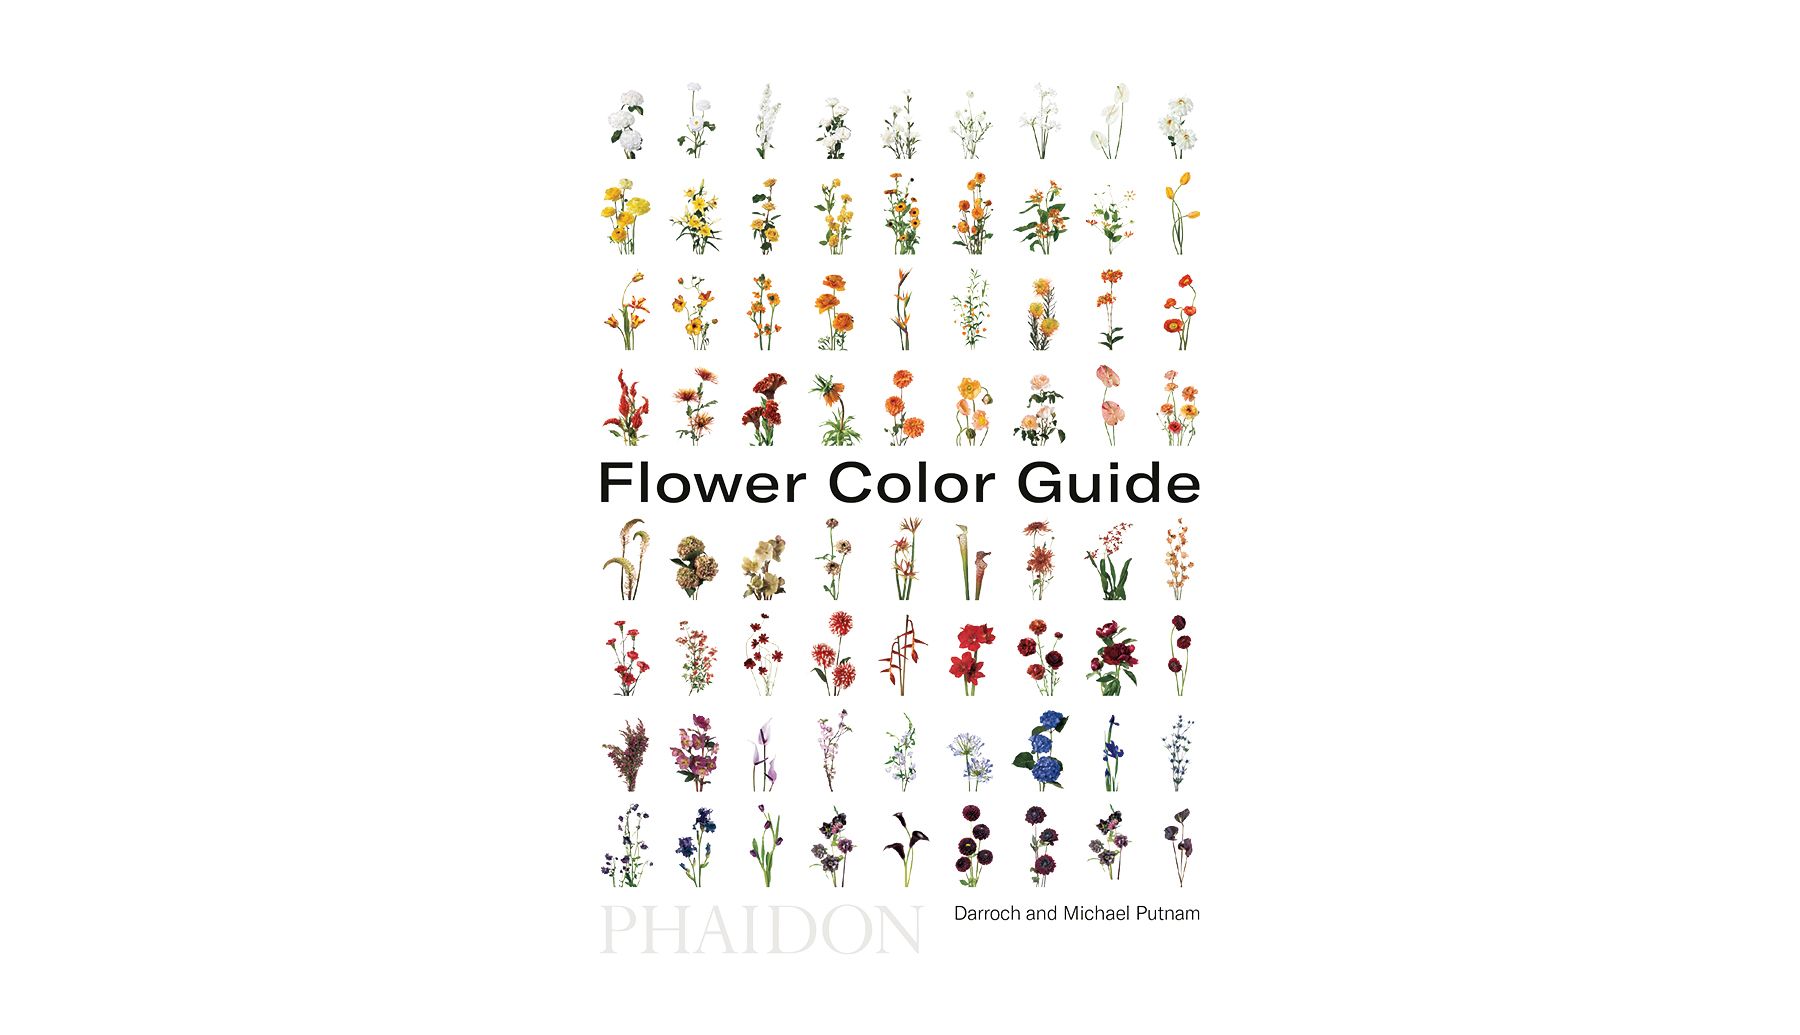 Blomsterfarveguide af Darroch og Michael Putnam